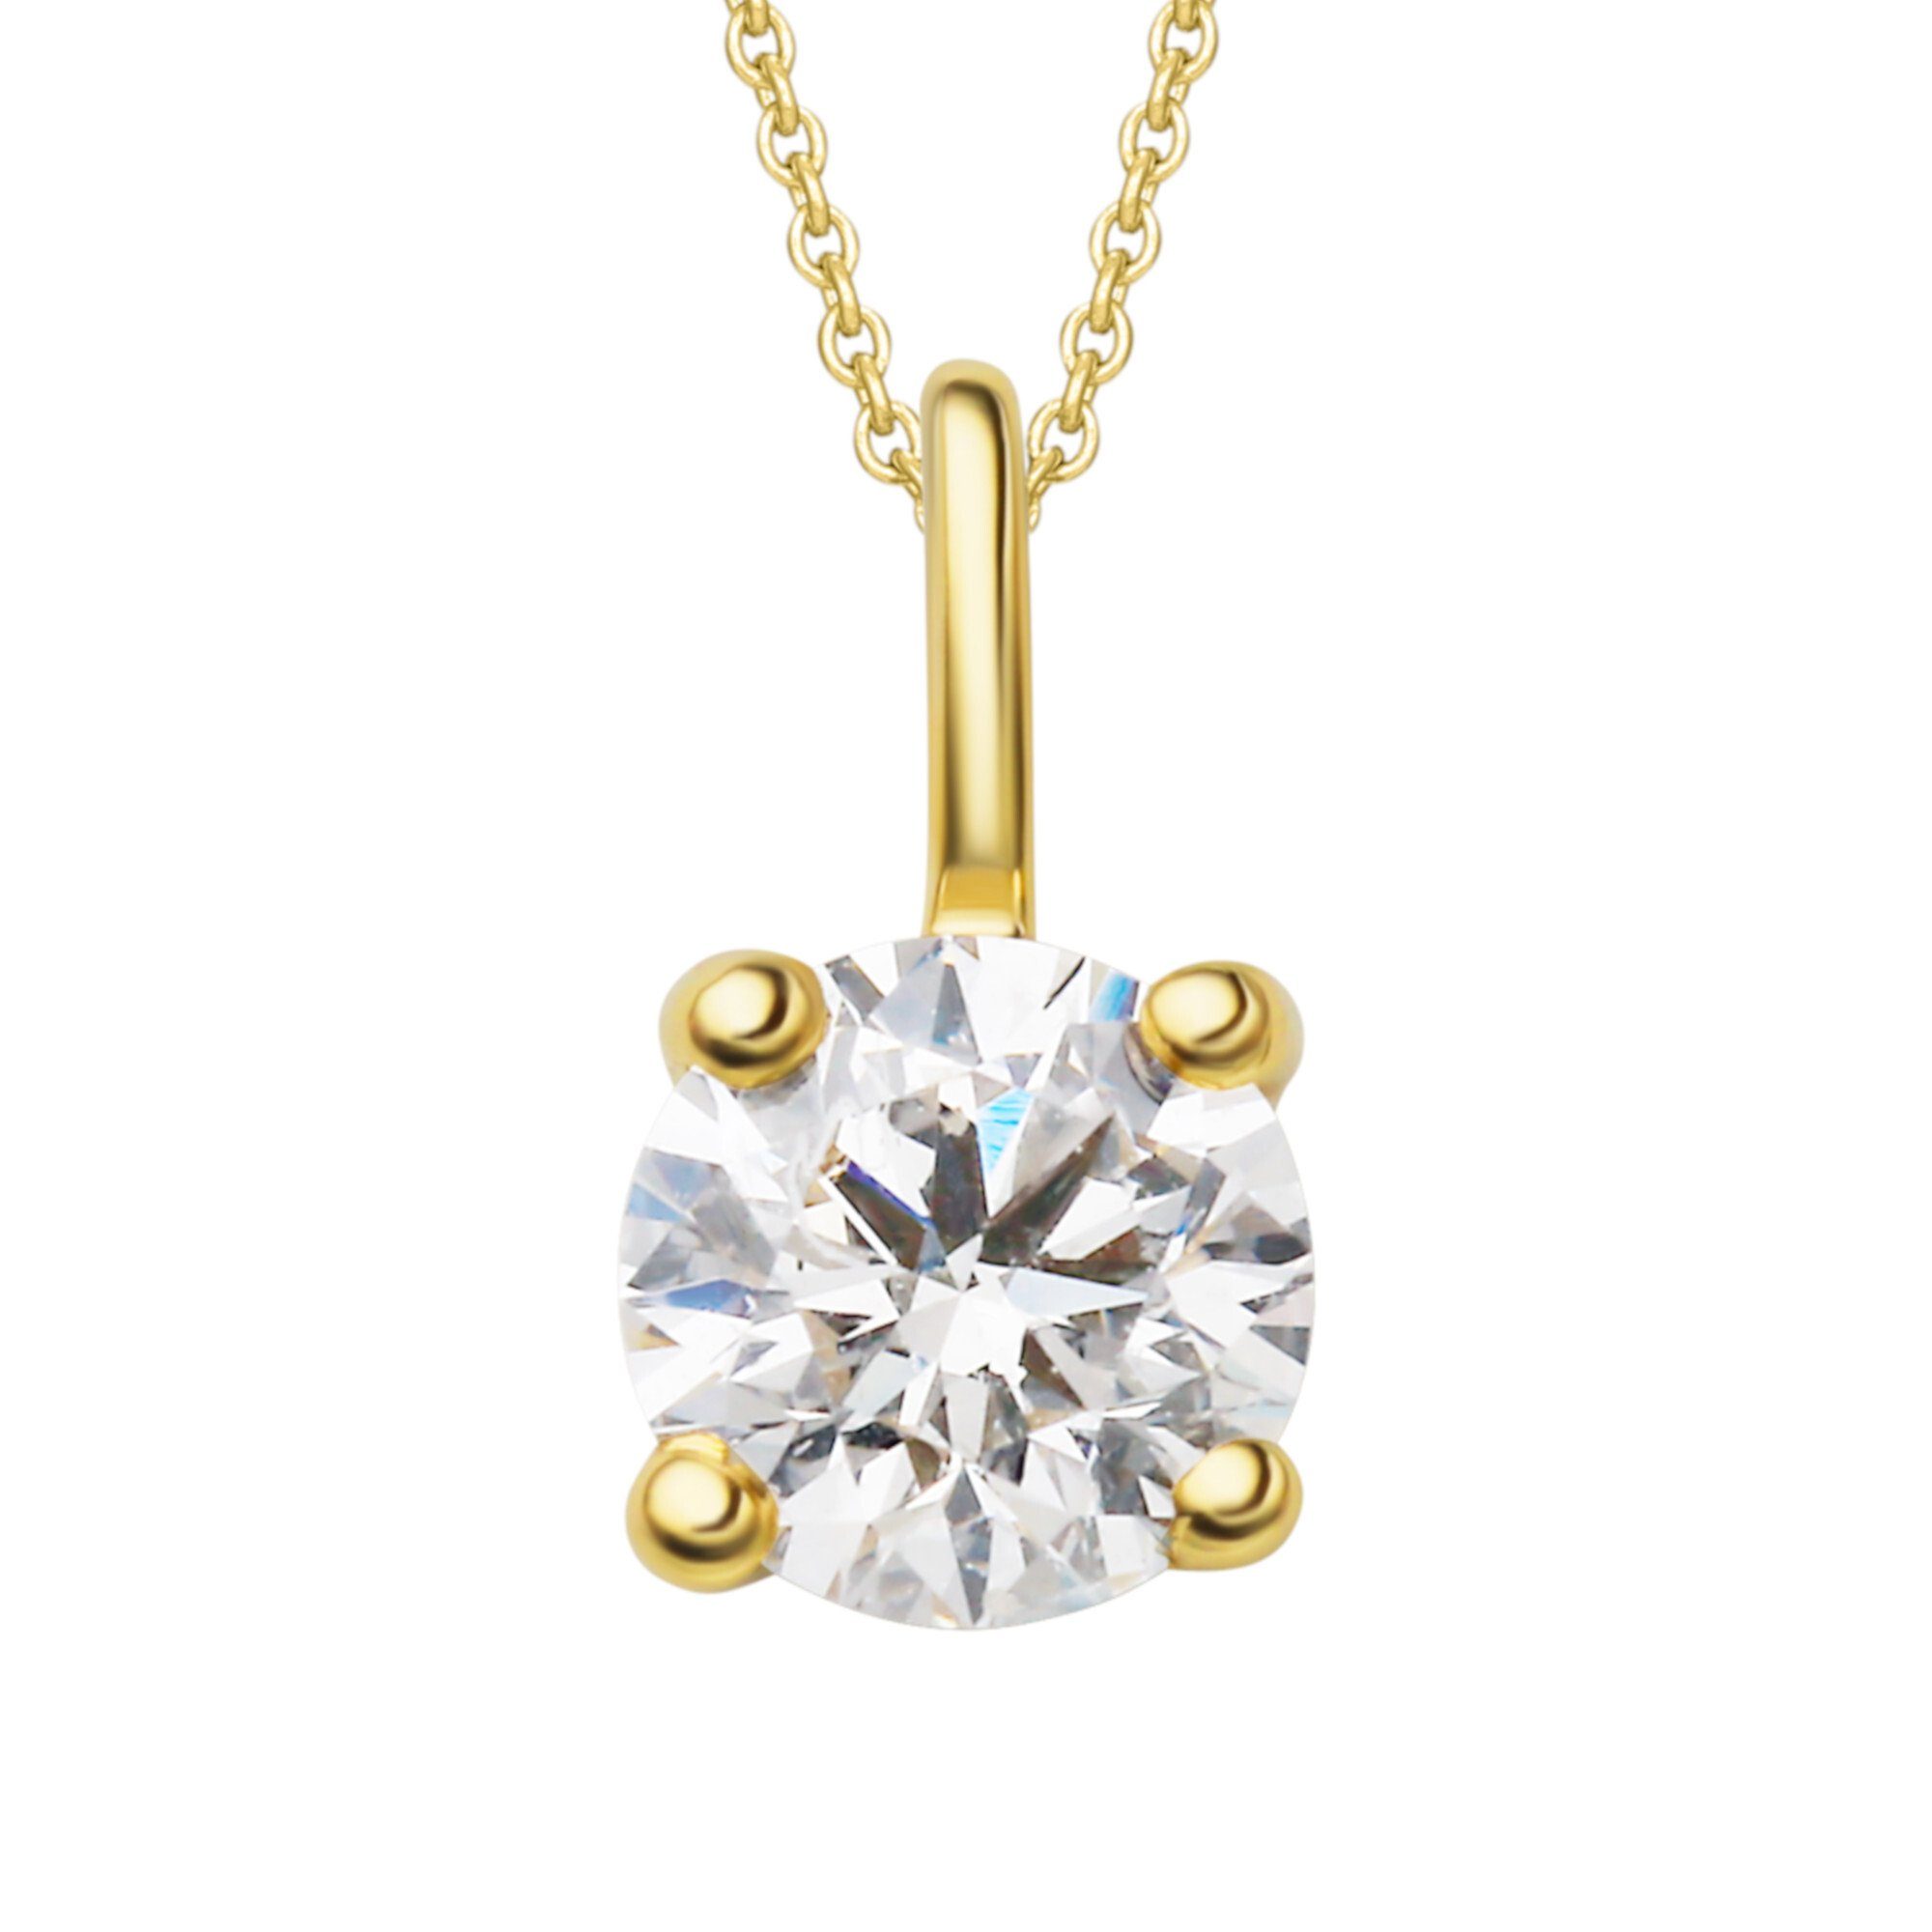 Damen Anhänger Kettenanhänger 0.2 aus ONE Gold 750 ct Brillant ELEMENT Diamant Gelbgold, Schmuck